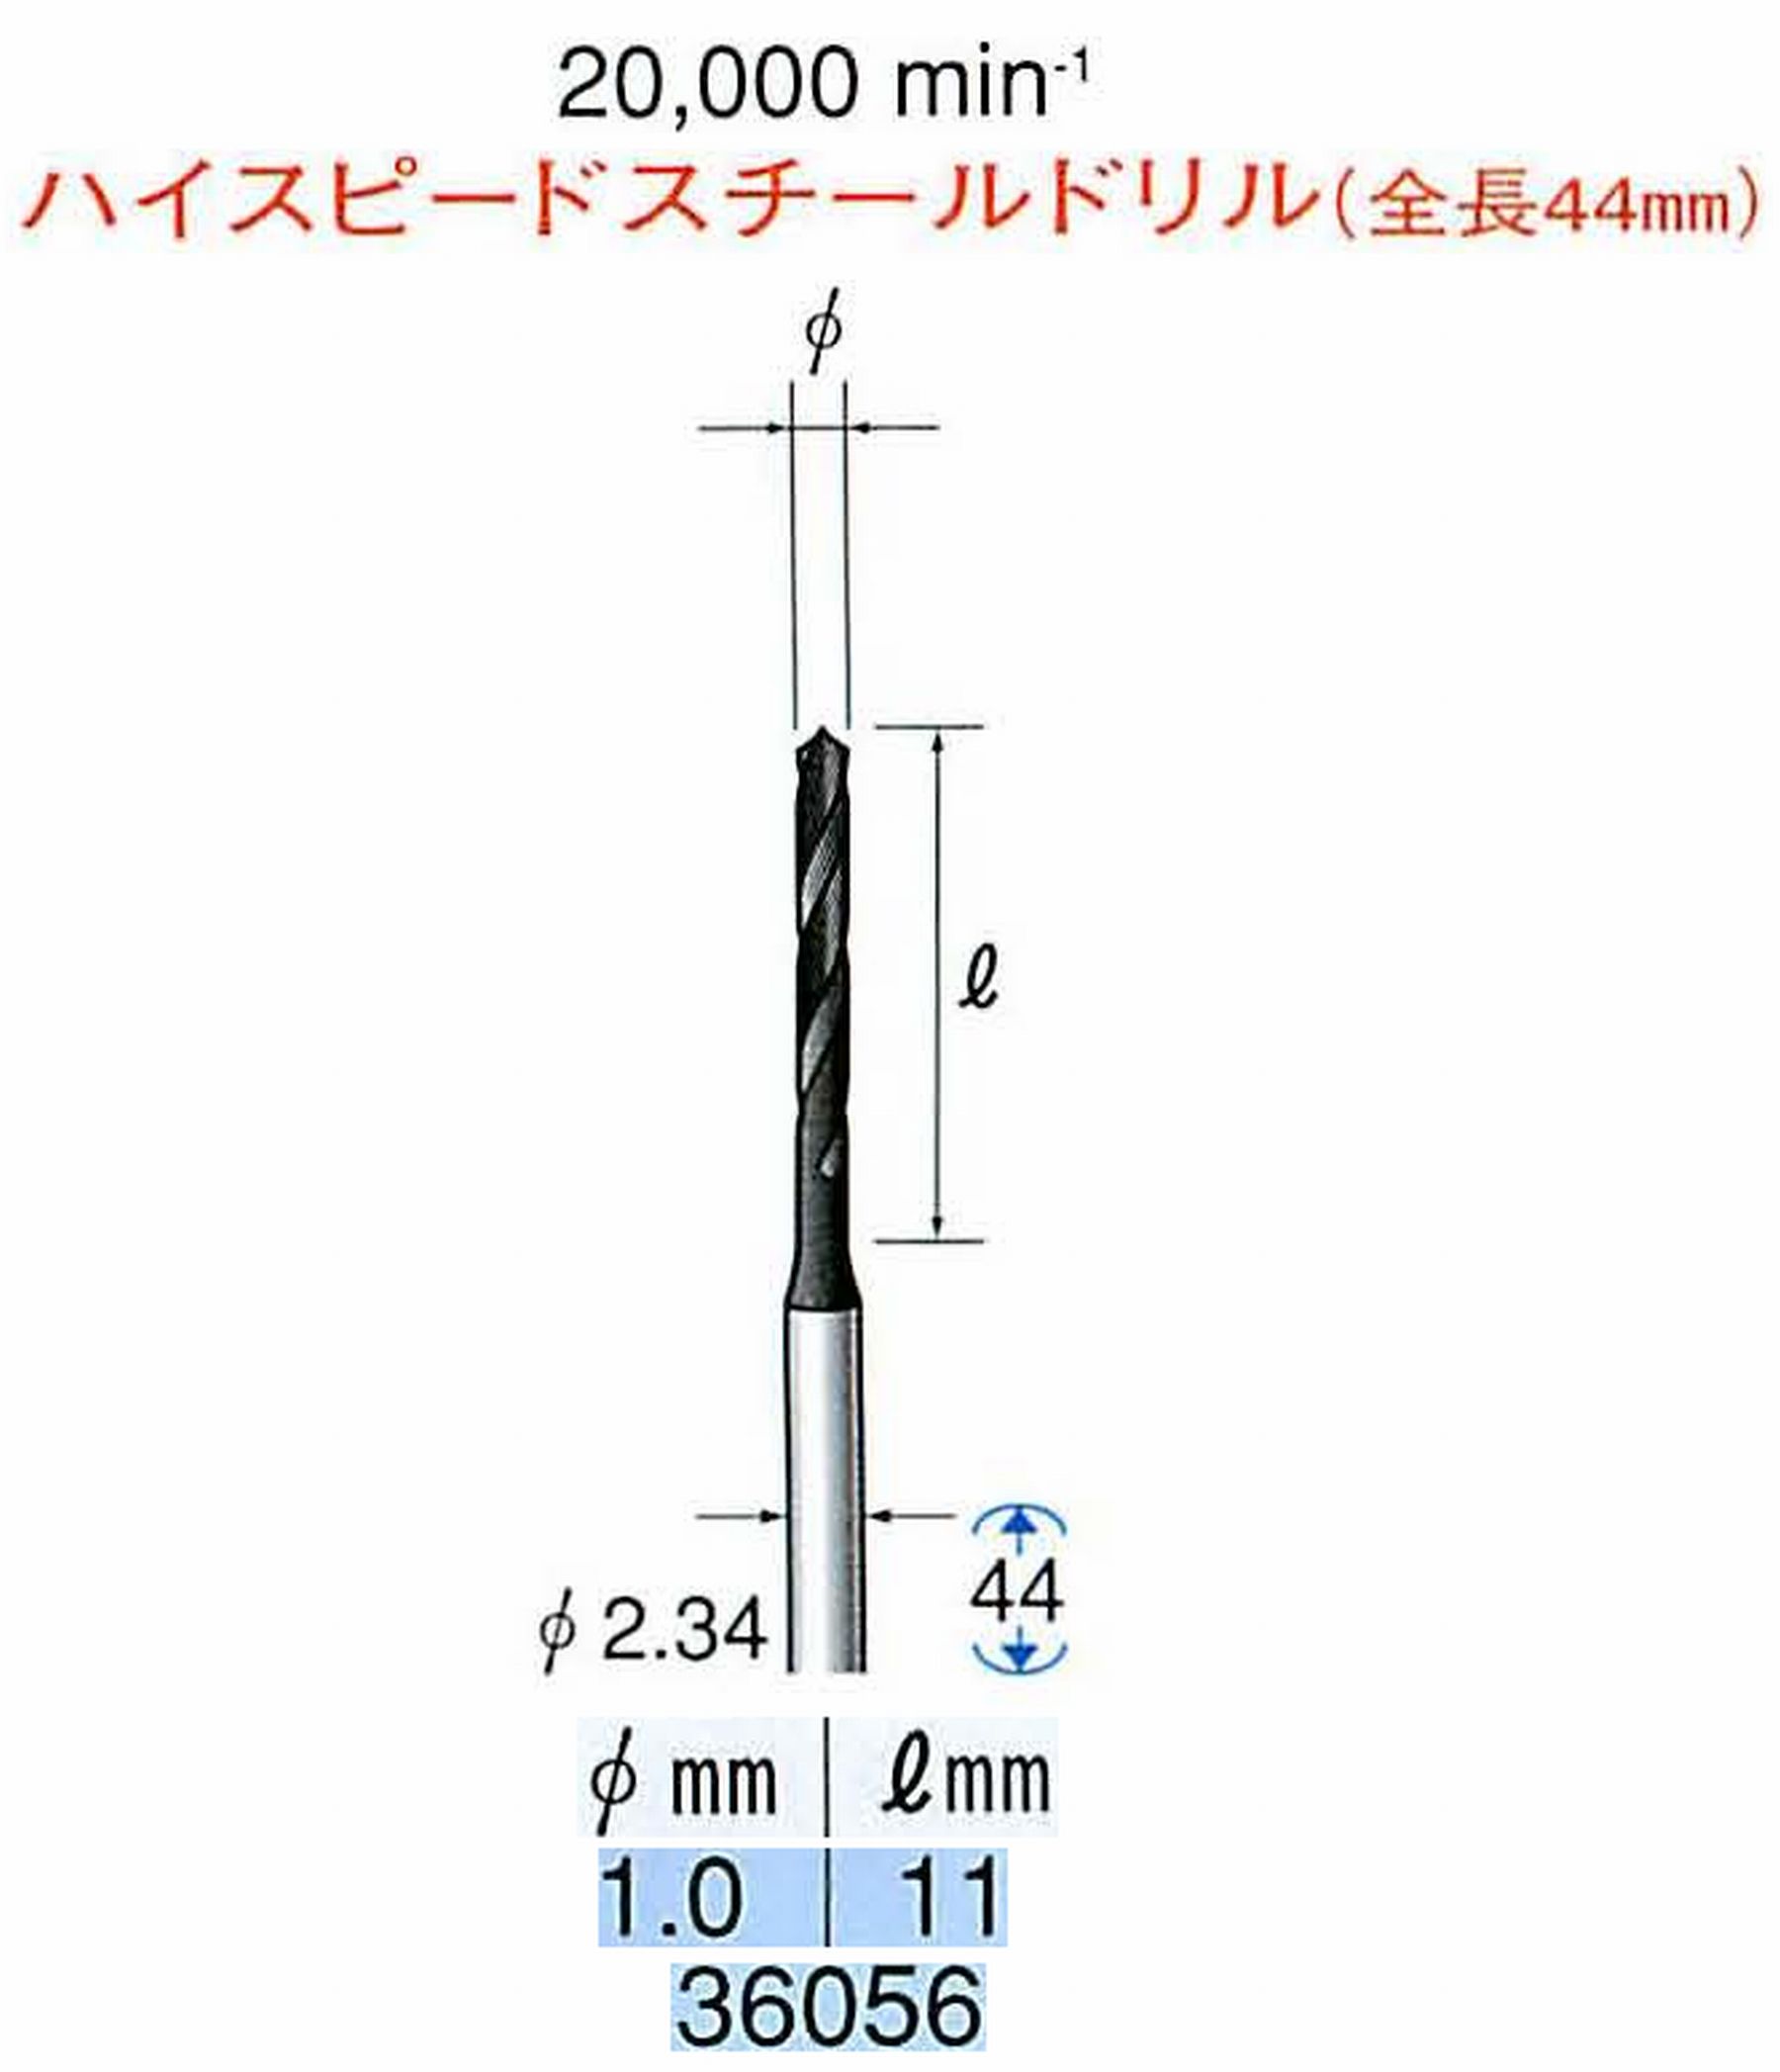 ナカニシ/NAKANISHI ツイストドリル ハイスピードスチール(H.S.S)ドリル(全長44mm) 軸径(シャンク) φ2.34mm 36056